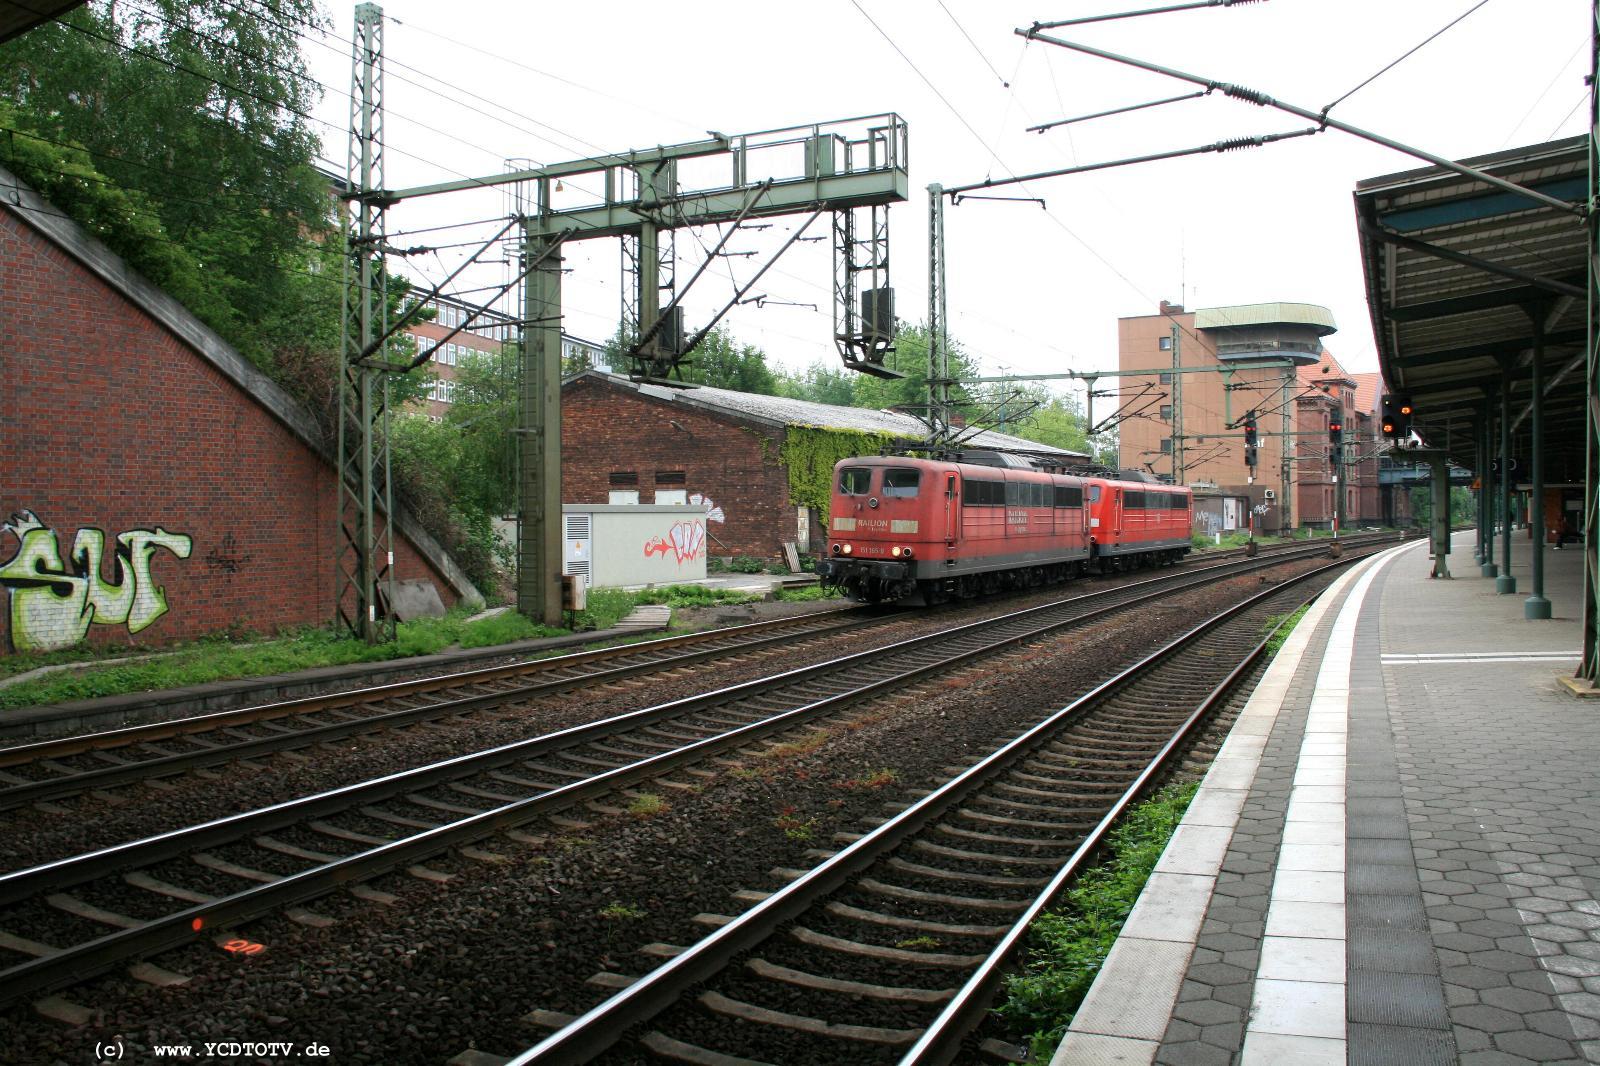  Bahnhof Hamburg-Harburg, 18.05.2011, Bahnsteig 5 Blick Richtung Norden 